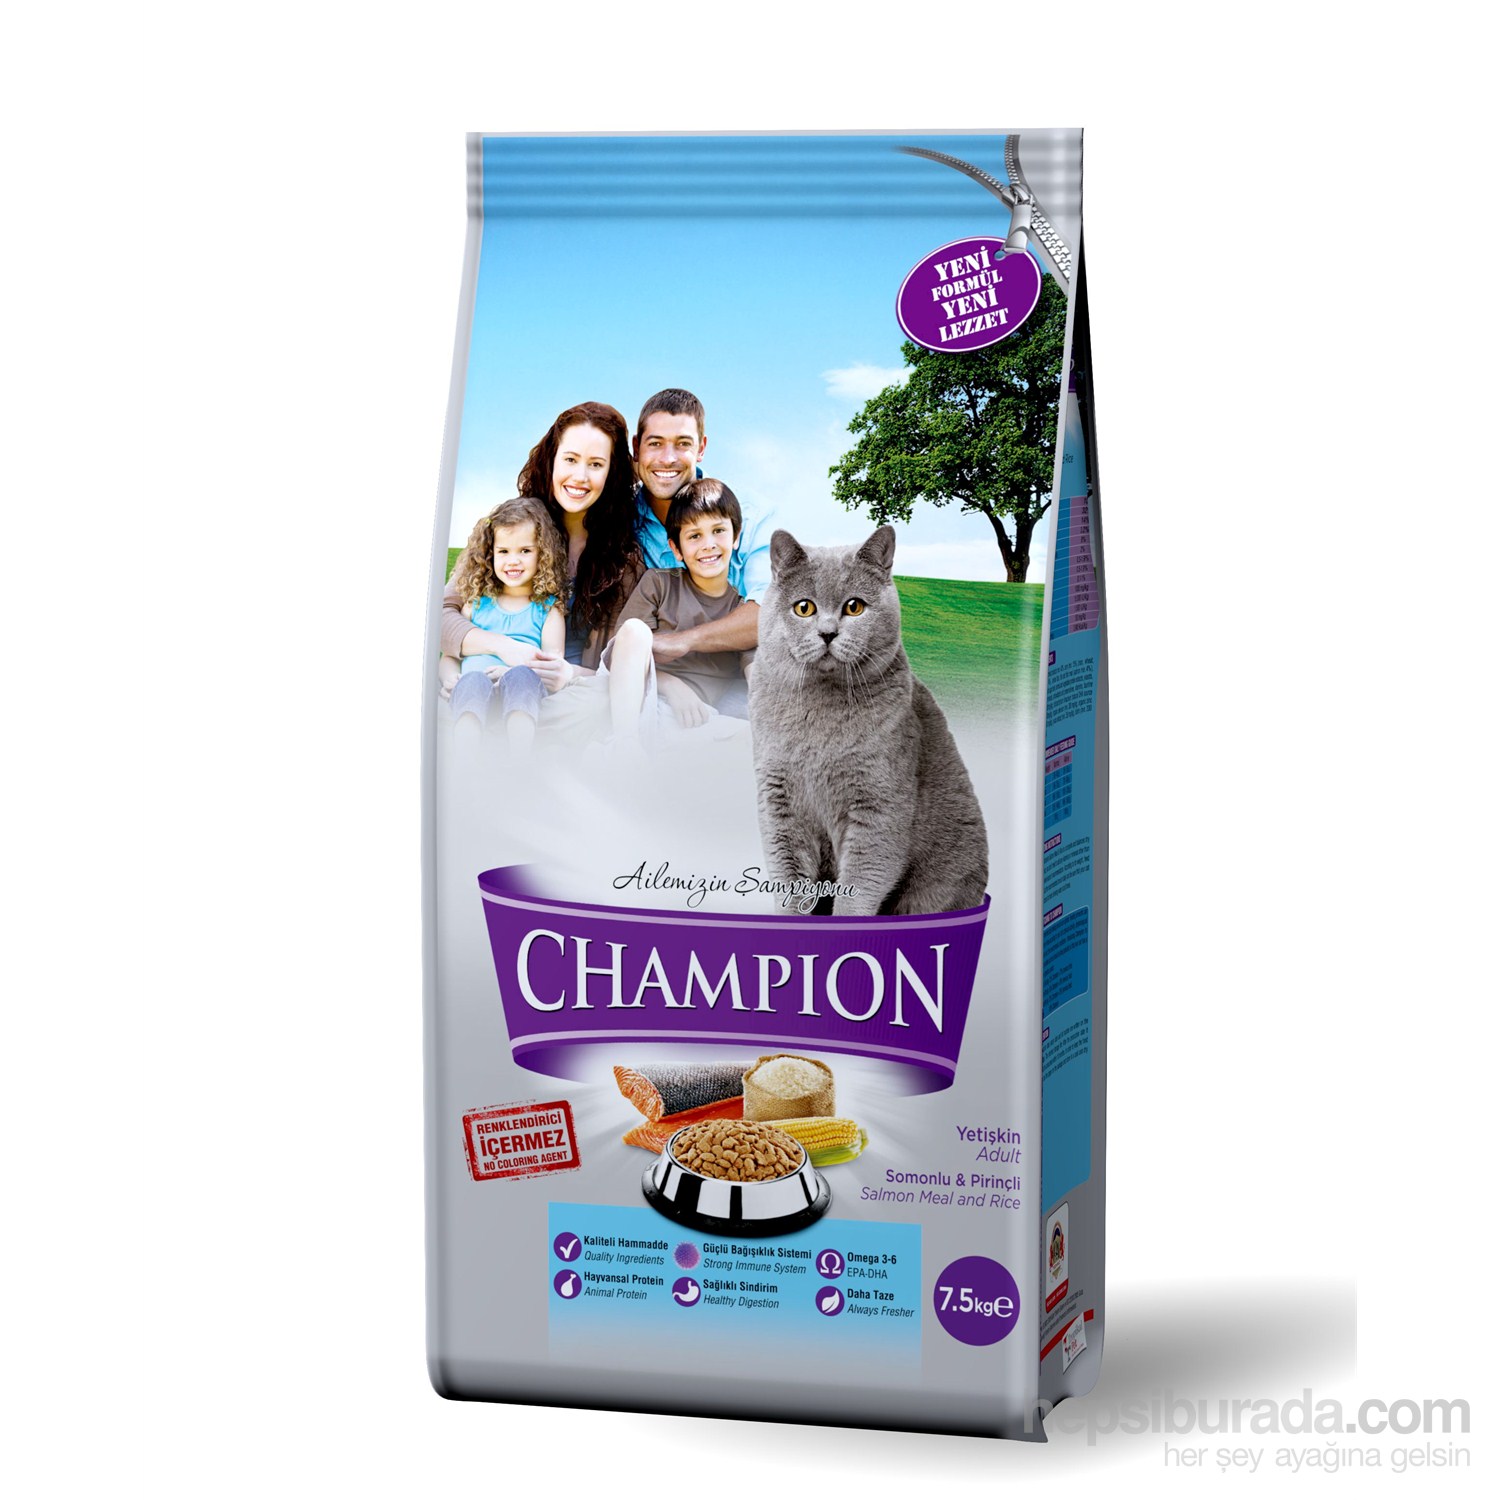 Champion Somonlu & Pirinçli Yetişkin Kedi Maması 7,5 Kg fd